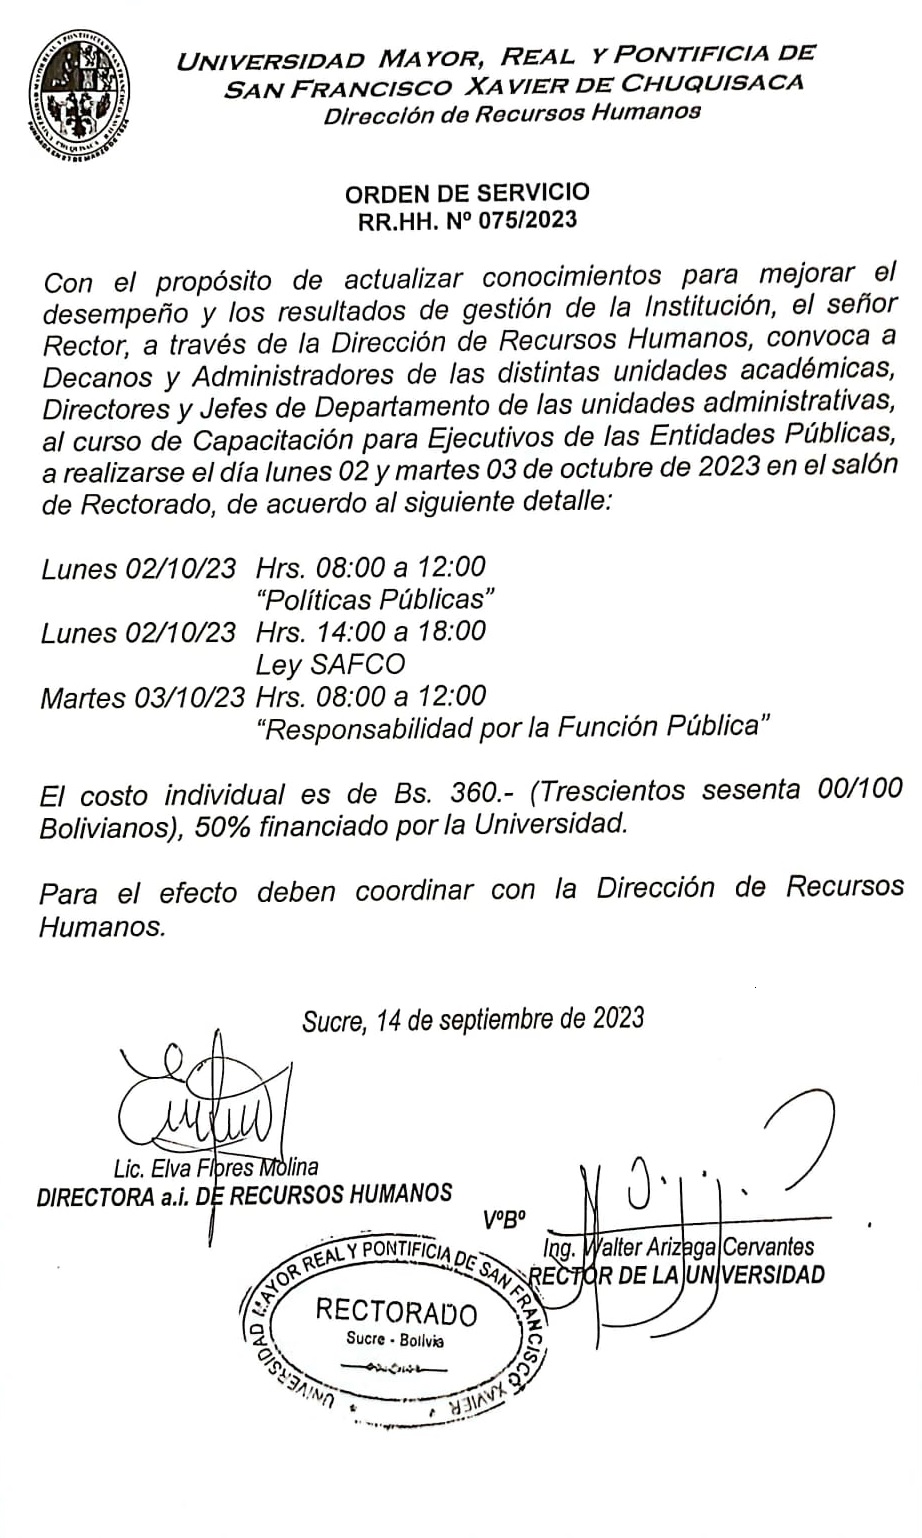 ORDEN DE SERVICIO RR.HH. Nº 075/2023, CURSO DE CAPACITACIÓN PARA LOS EJECUTIVOS EN LAS ENTIDADES PUBLICAS.